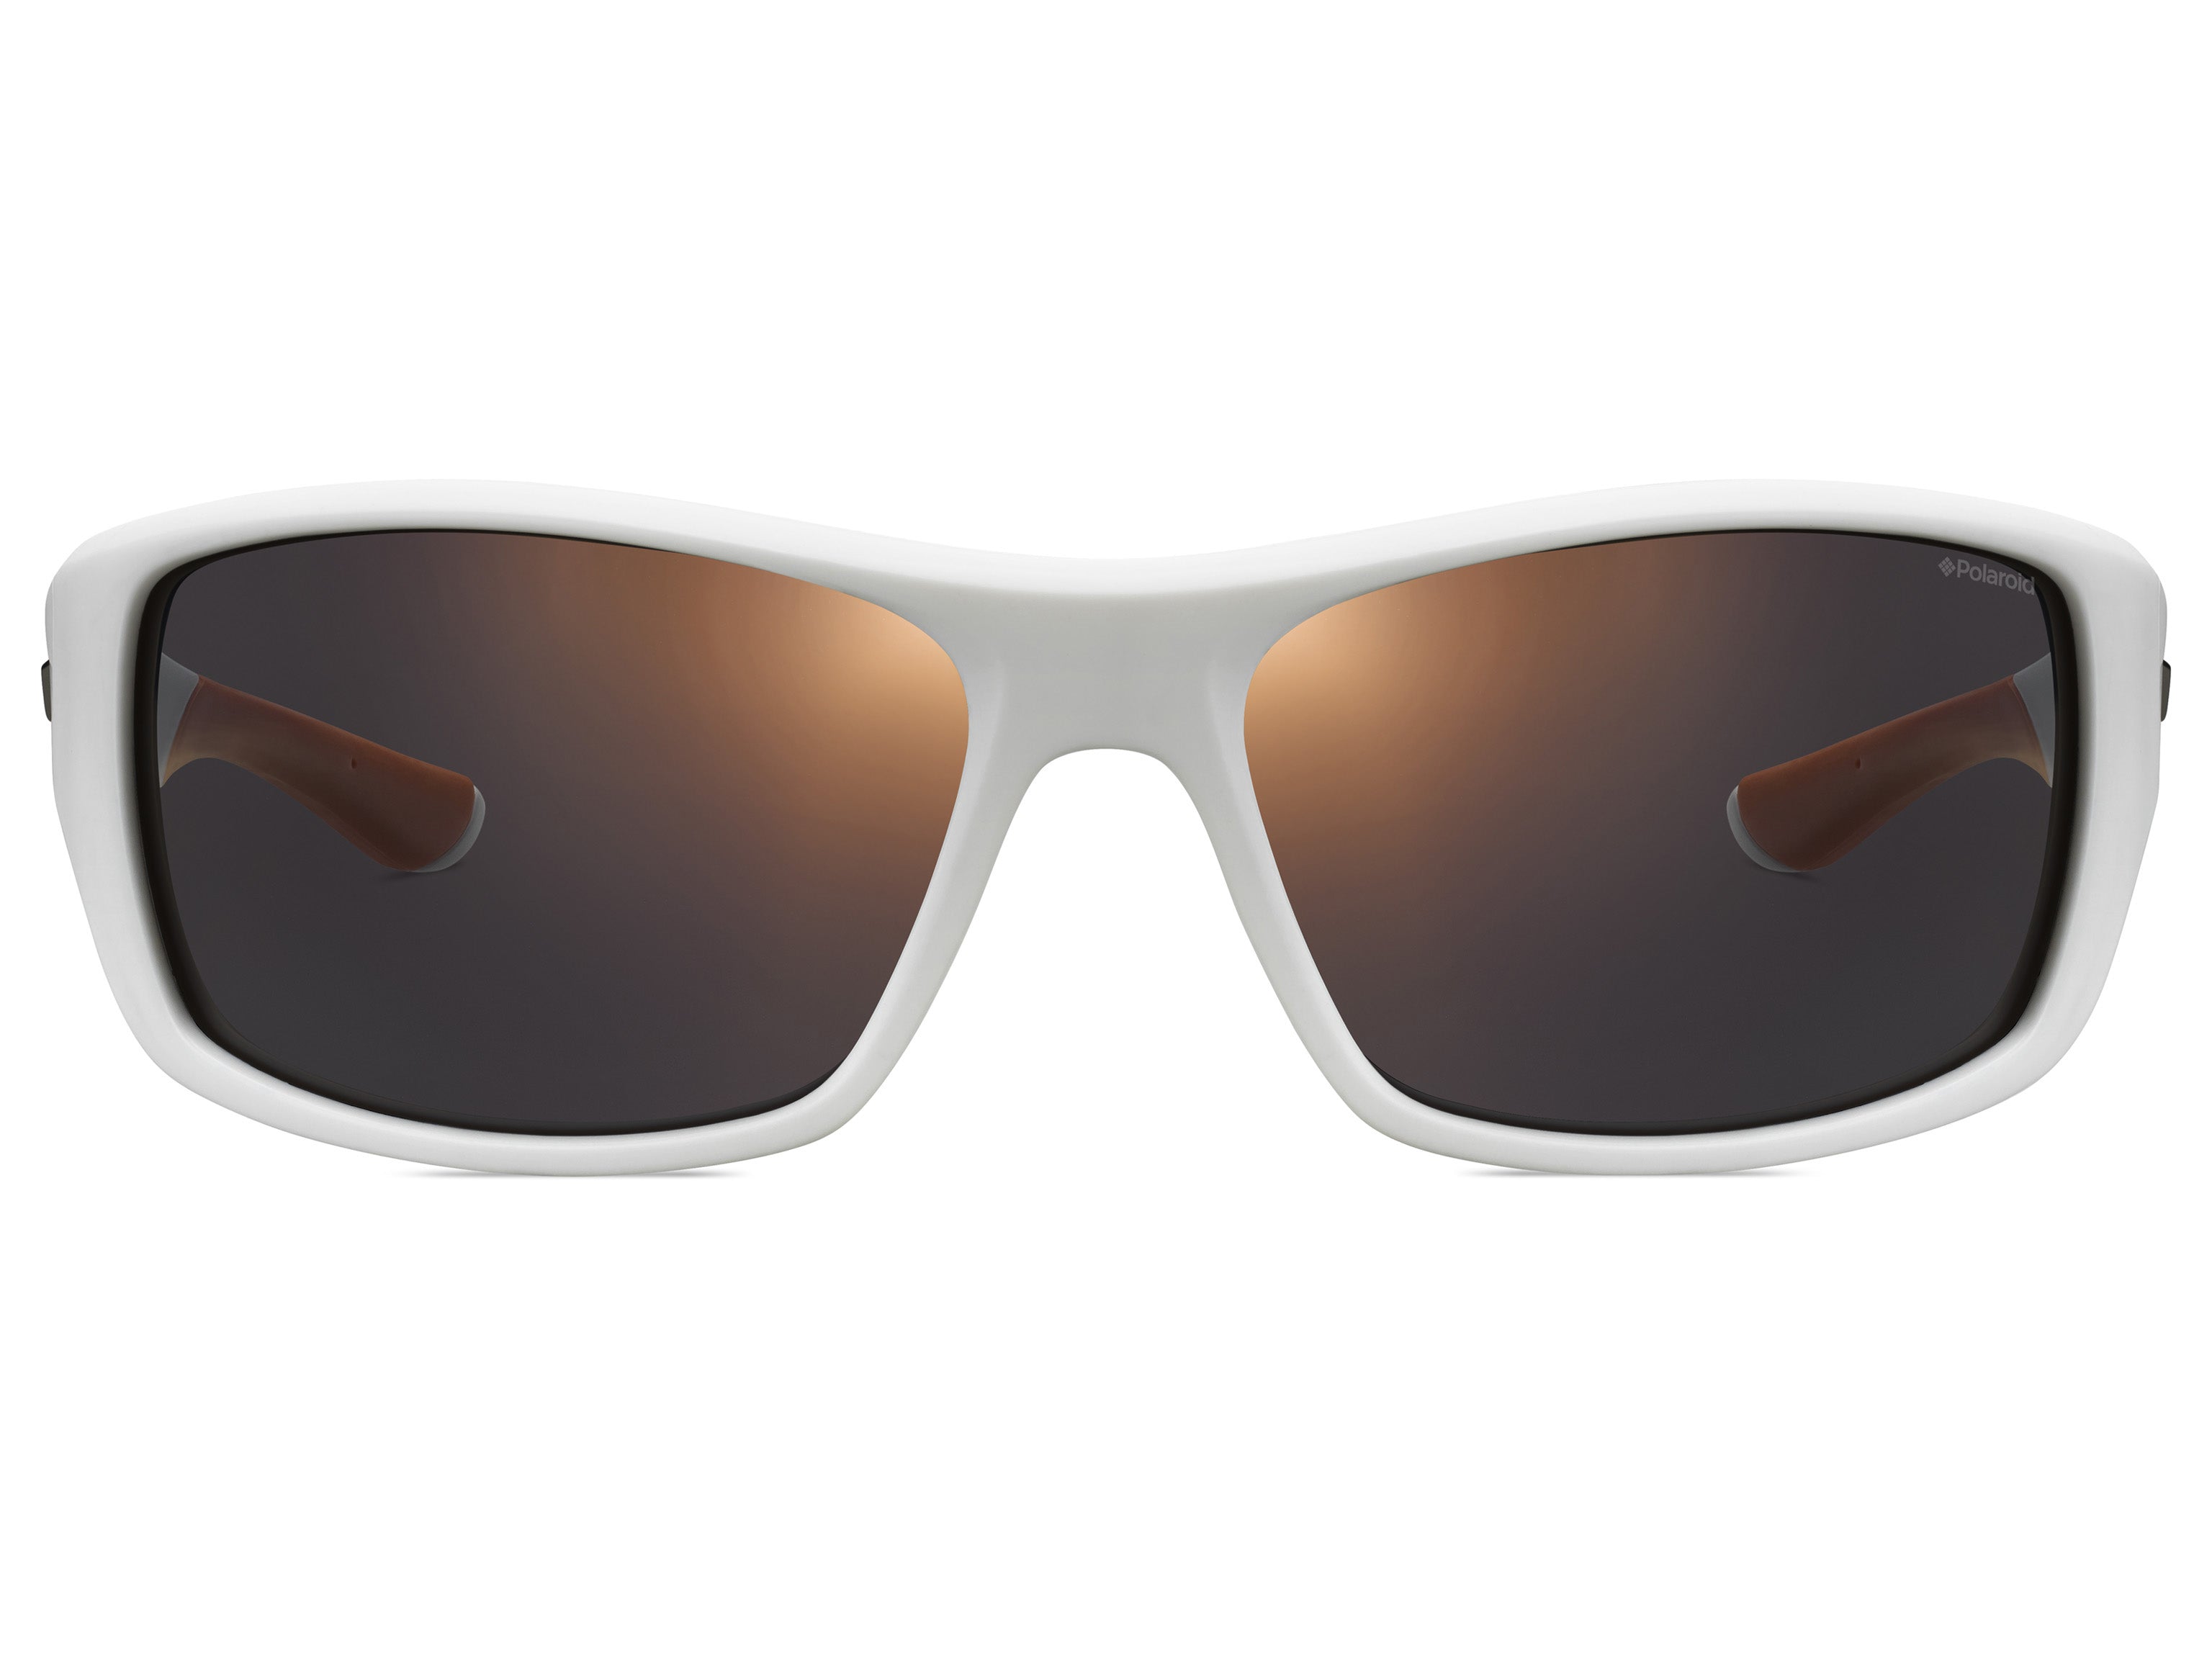 Polaroid Wraparound Sports Sunglasses